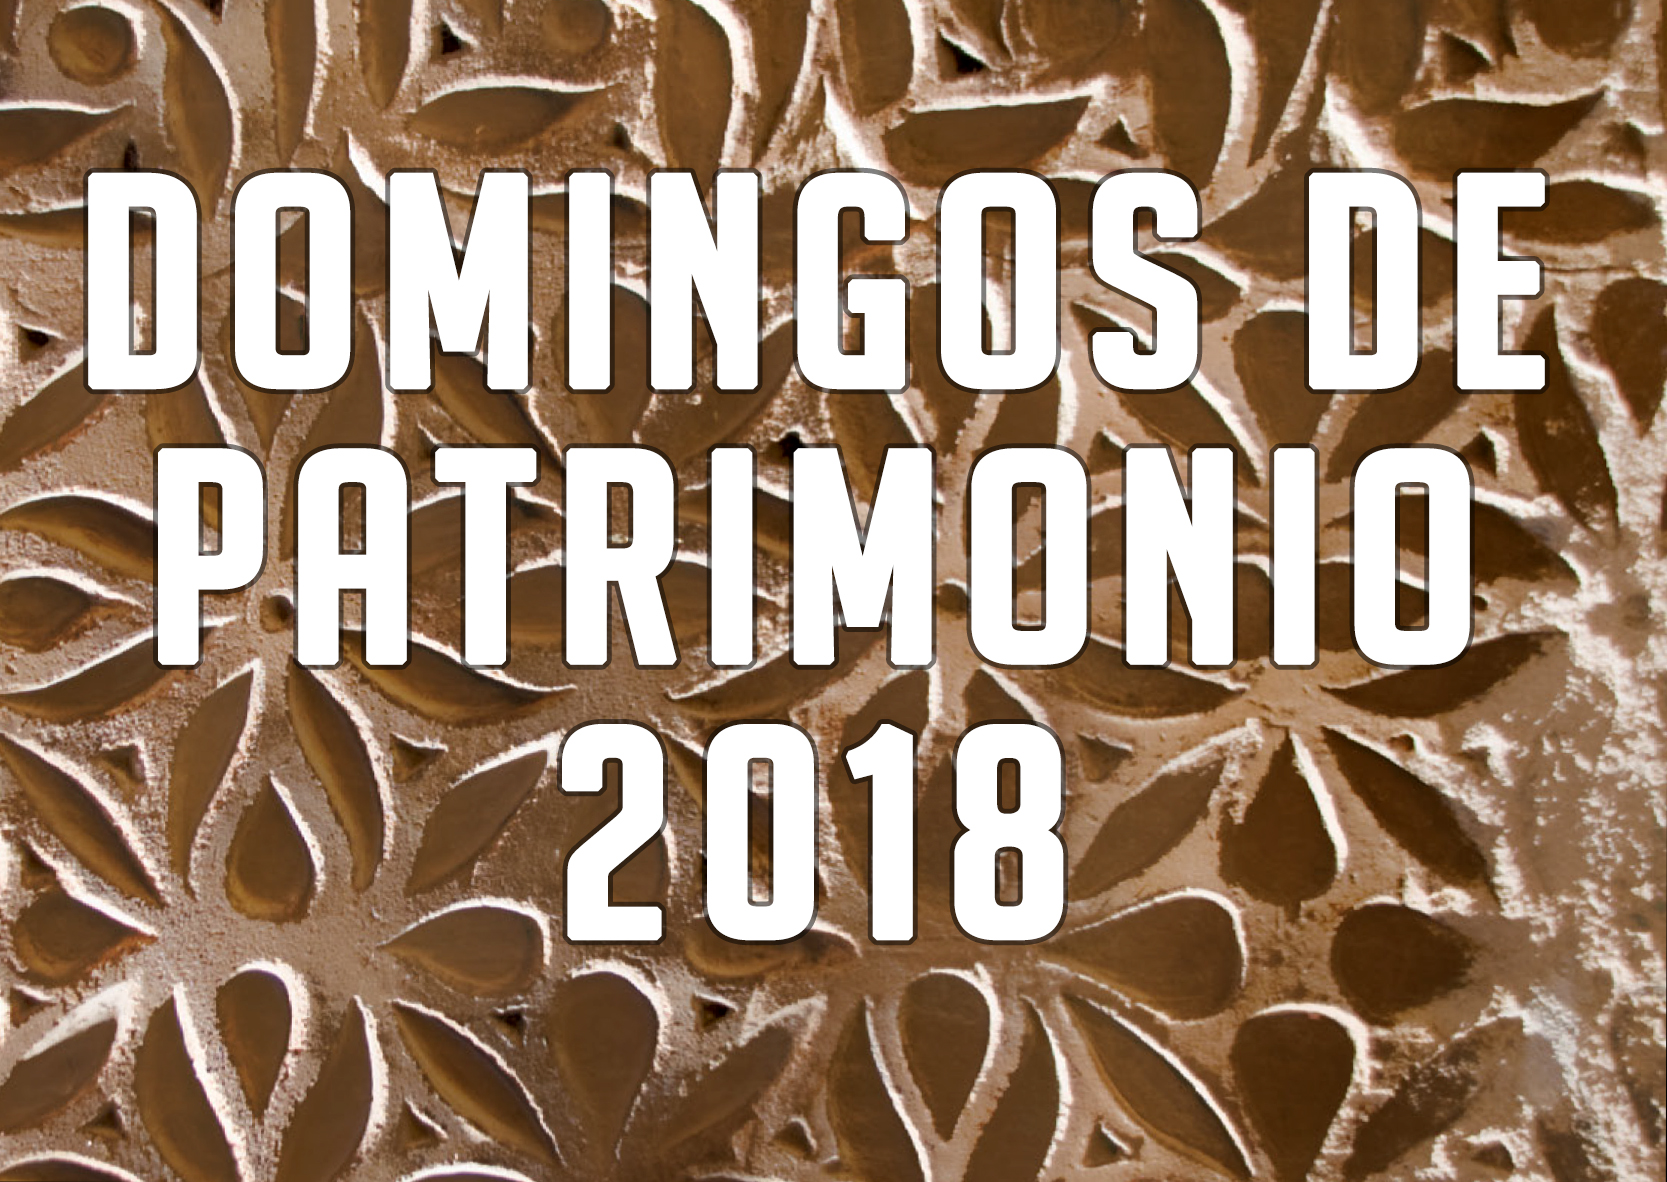 DOMINGOS DE PATRIMONIO